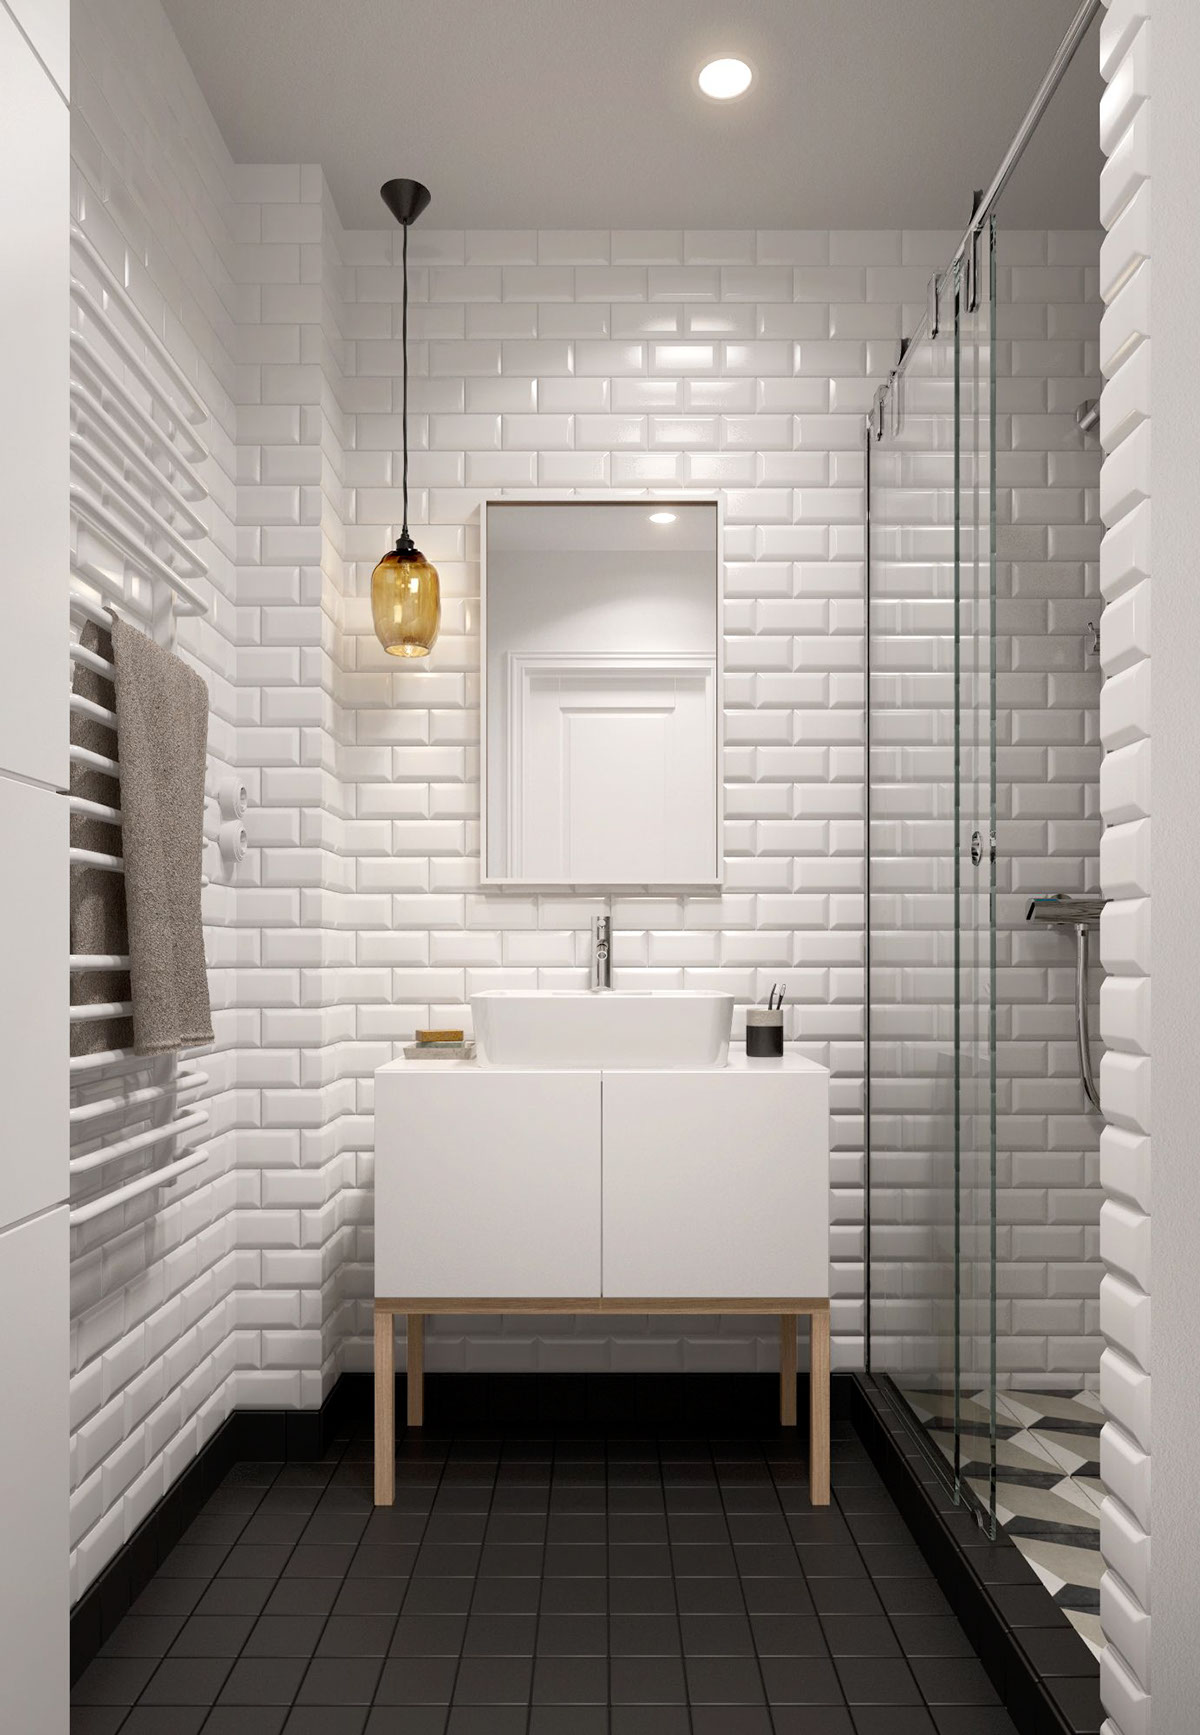 Белая плитка под кирпич в интерьере черно-белой ванной 5 кв м